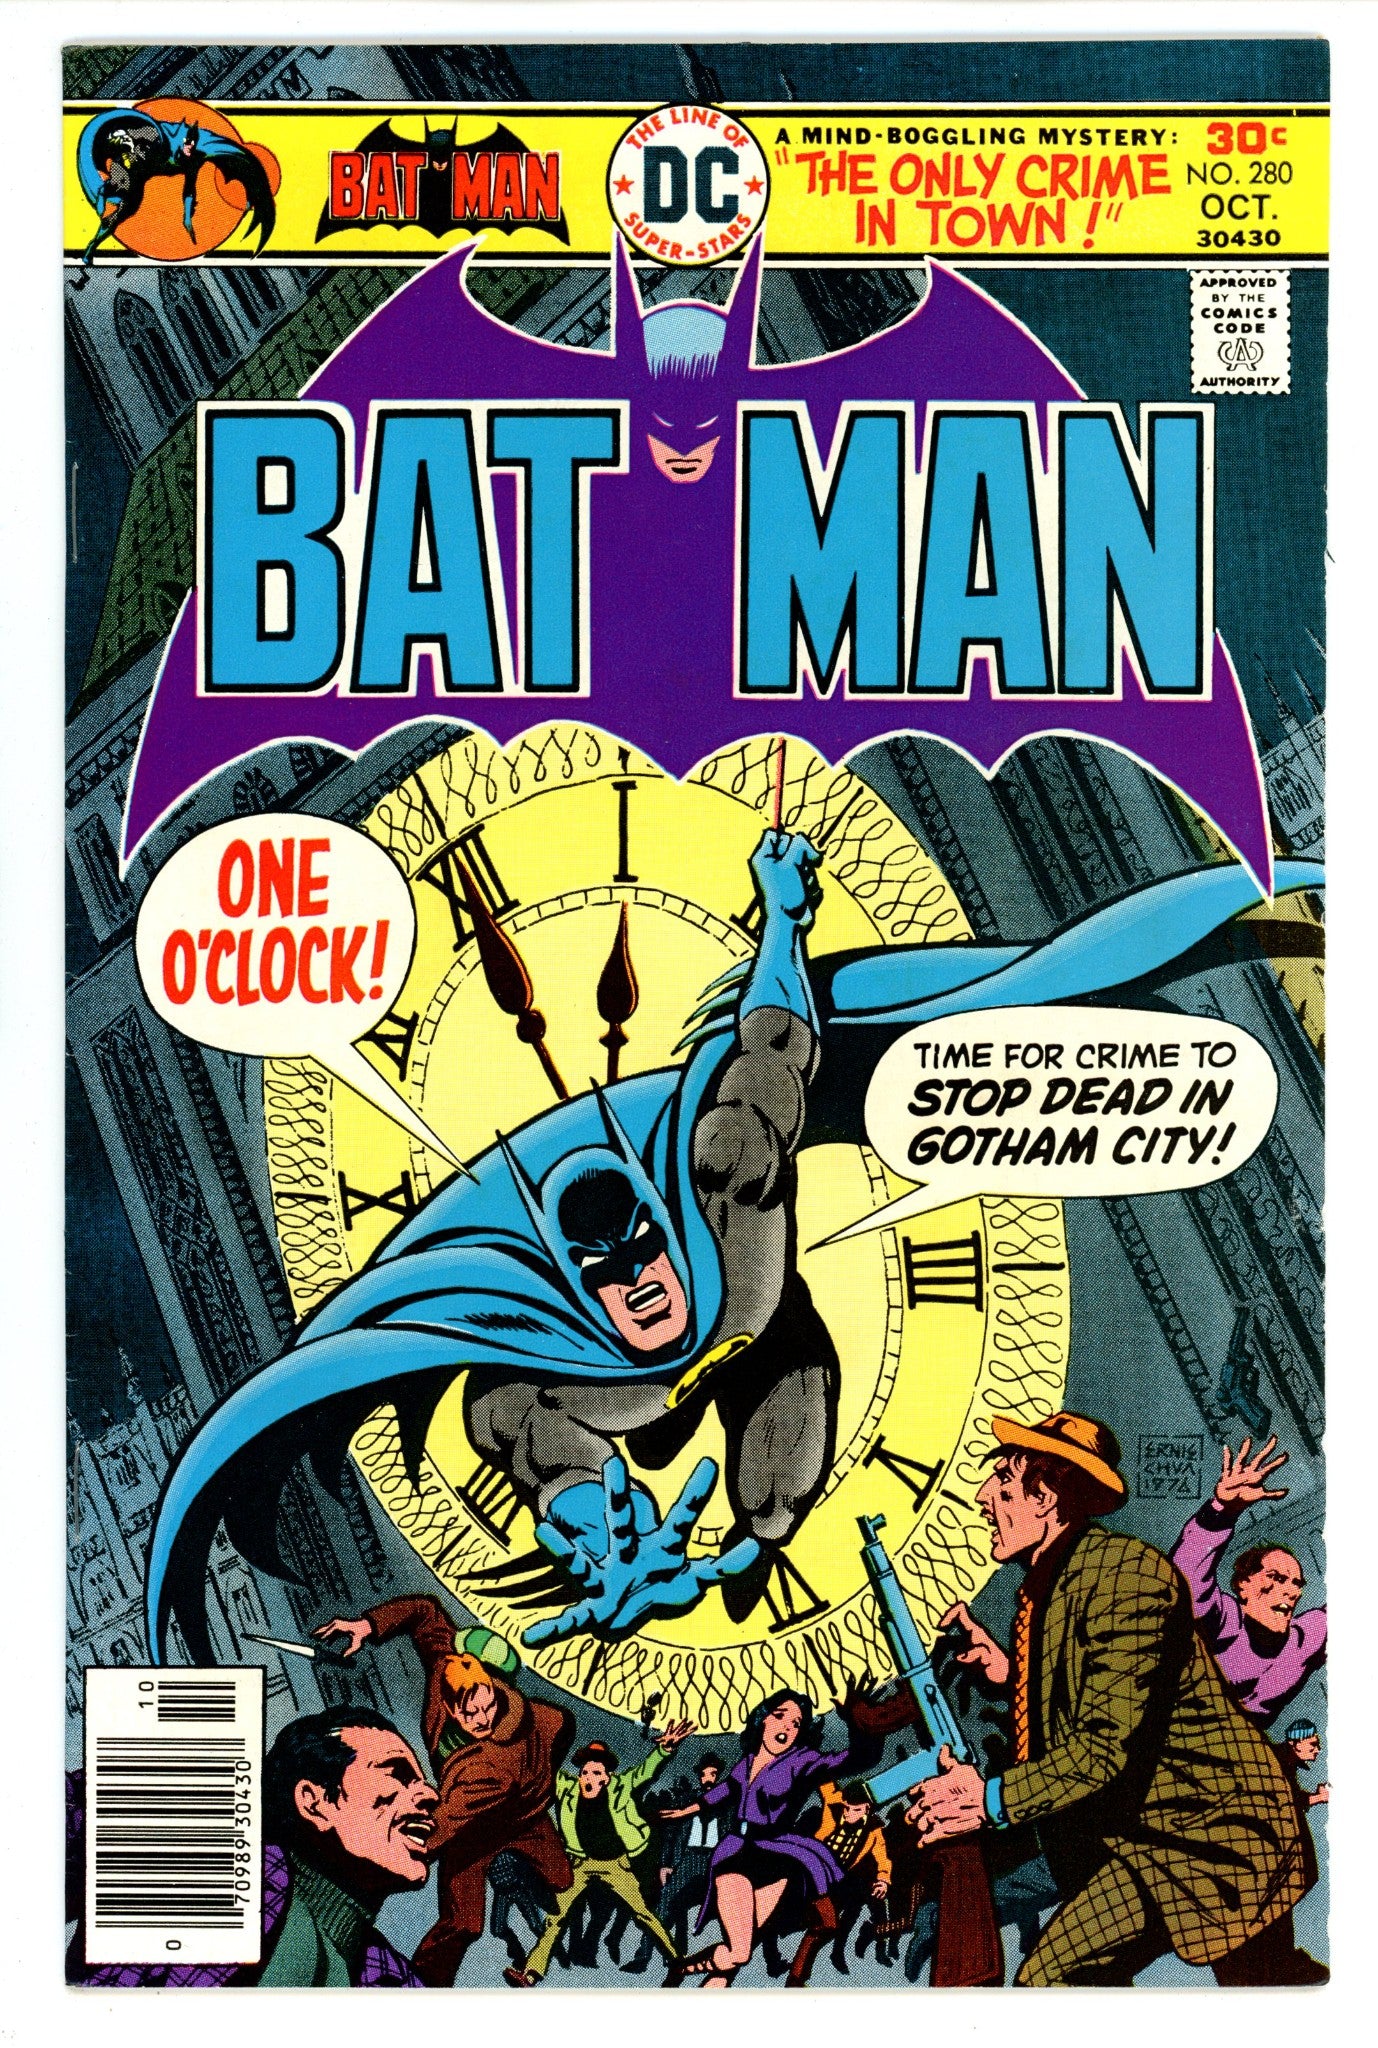 Batman Vol 1 280 VF (8.0) (1976) 